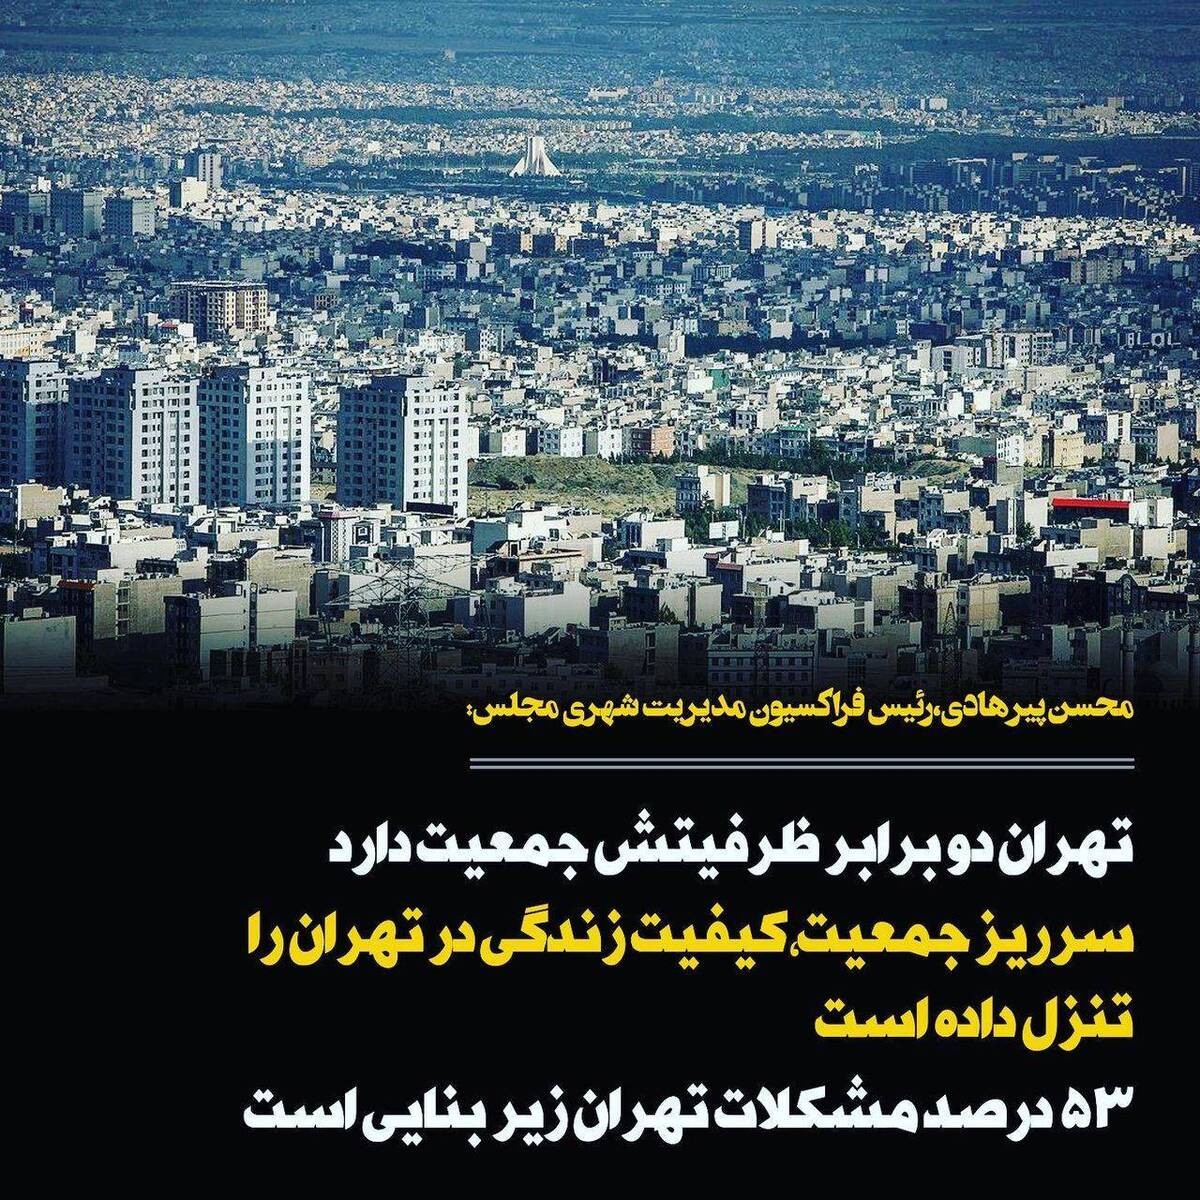 سرریز جمعیت، کیفیت زندگی در تهران را تنزل داده است